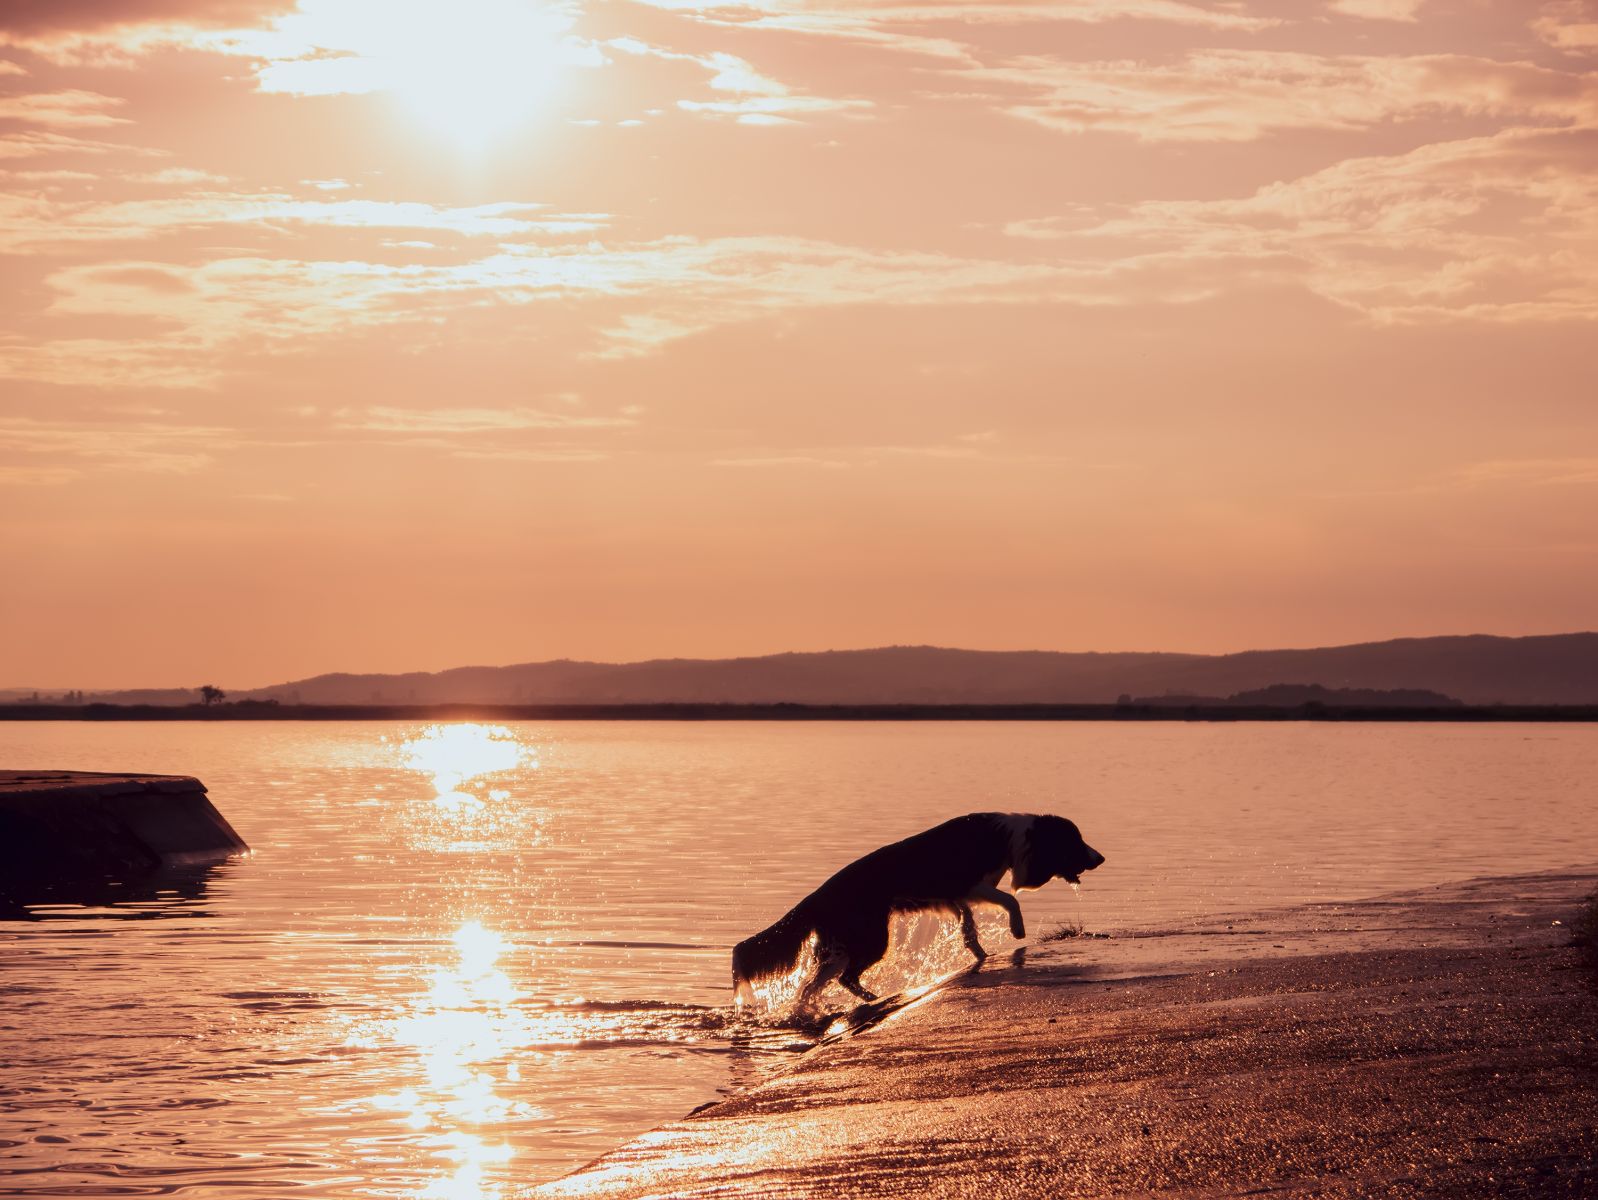 kánikula Magyarország időjárás előrejelzés Budapest Dunántúl Balaton jégeső eső zápor nyár 2022 június hőség hőfok kirándulás program esemény figyelmeztetés veszélyjelzés kutya úszás víz vízhőmérséklet